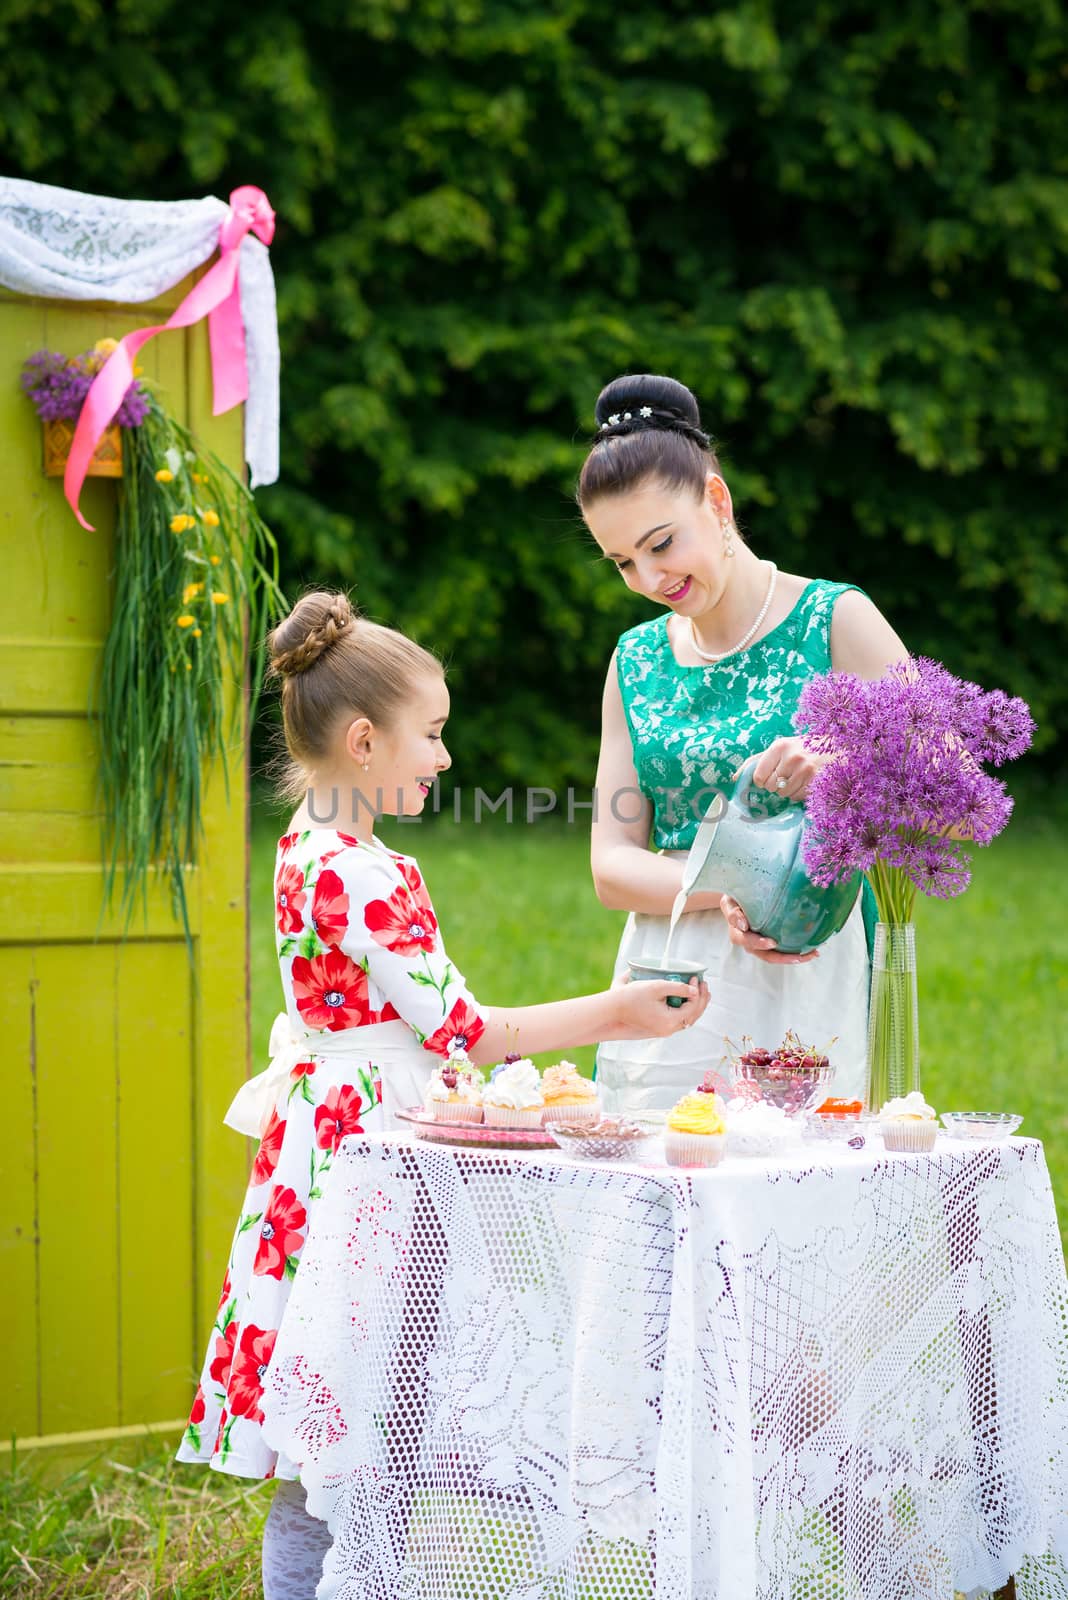 Mother and daughter cooking cupcakes by okskukuruza